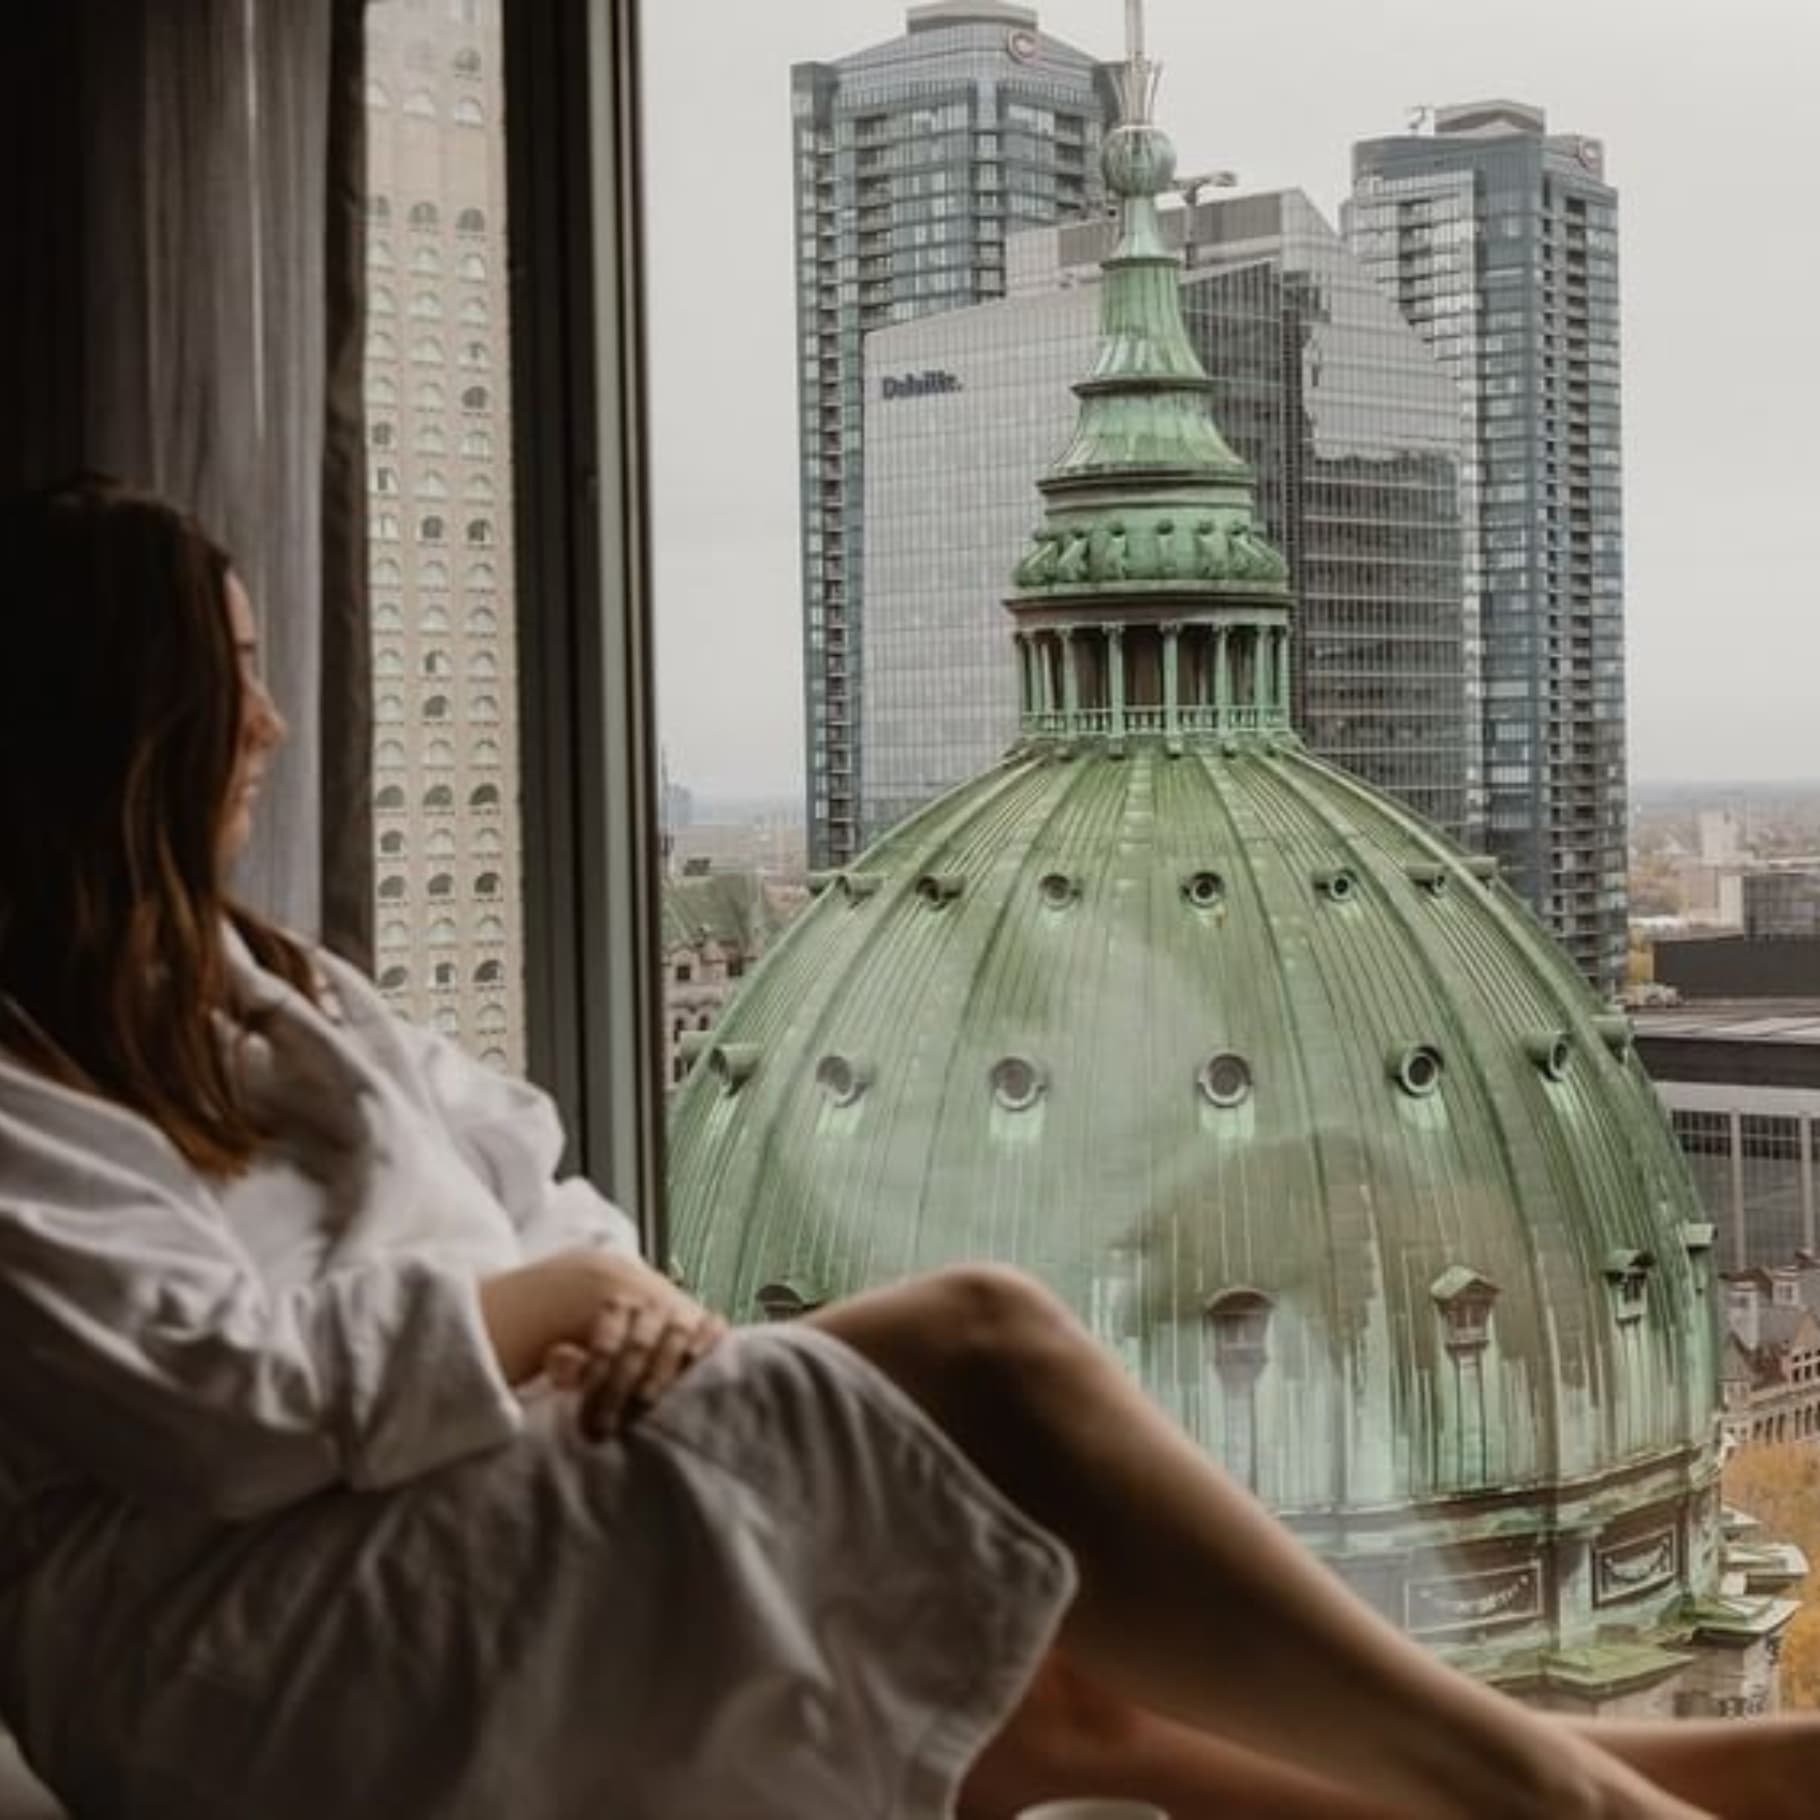 Les meilleurs hôtels au monde sont au centre-ville de Montréal selon Le Forbes